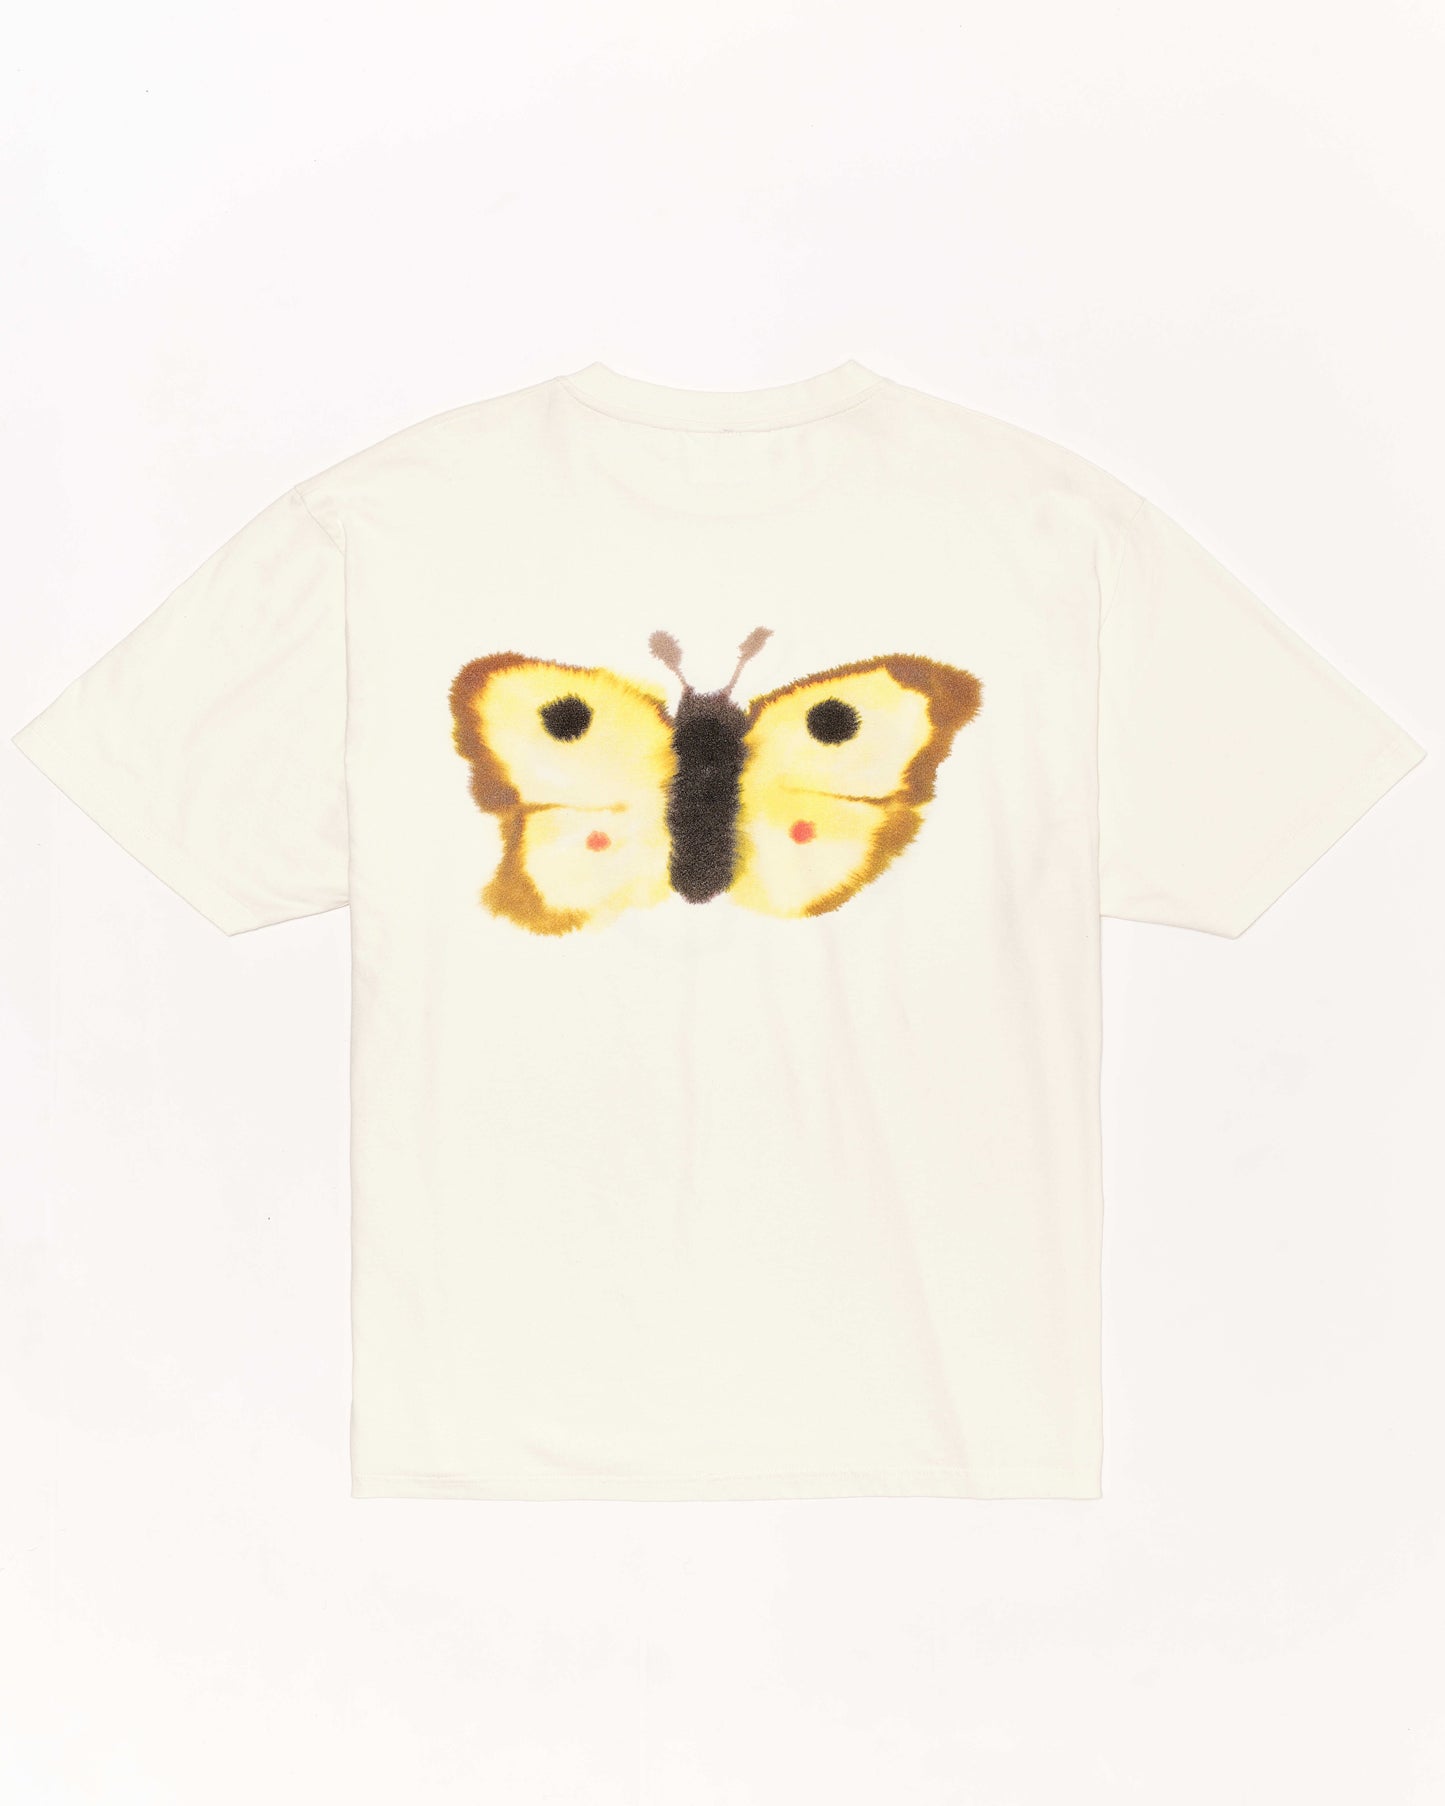 Butterfly, butterfly